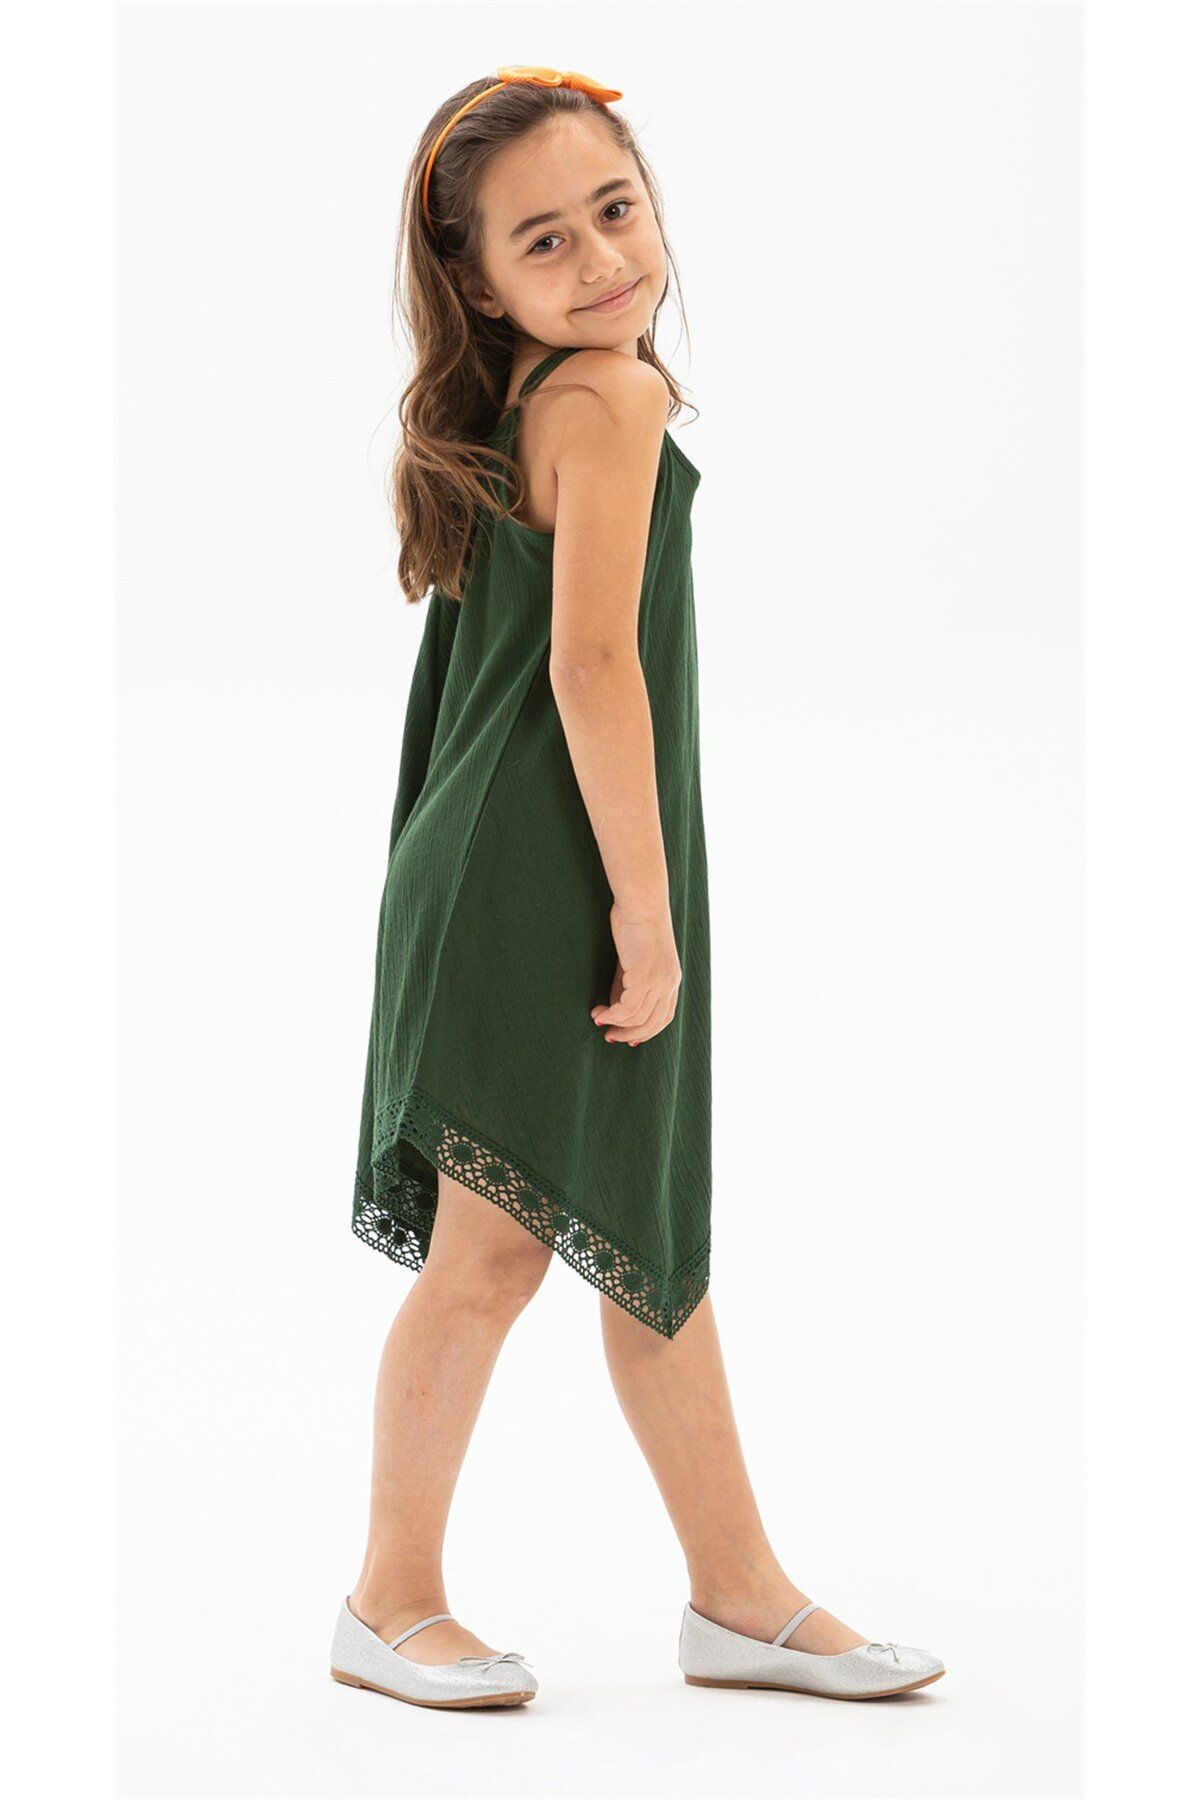 Eliş Şile Bezi Çağla Şile Bezi Kız Çocuk Yazlık Elbise Yeşil Ysl